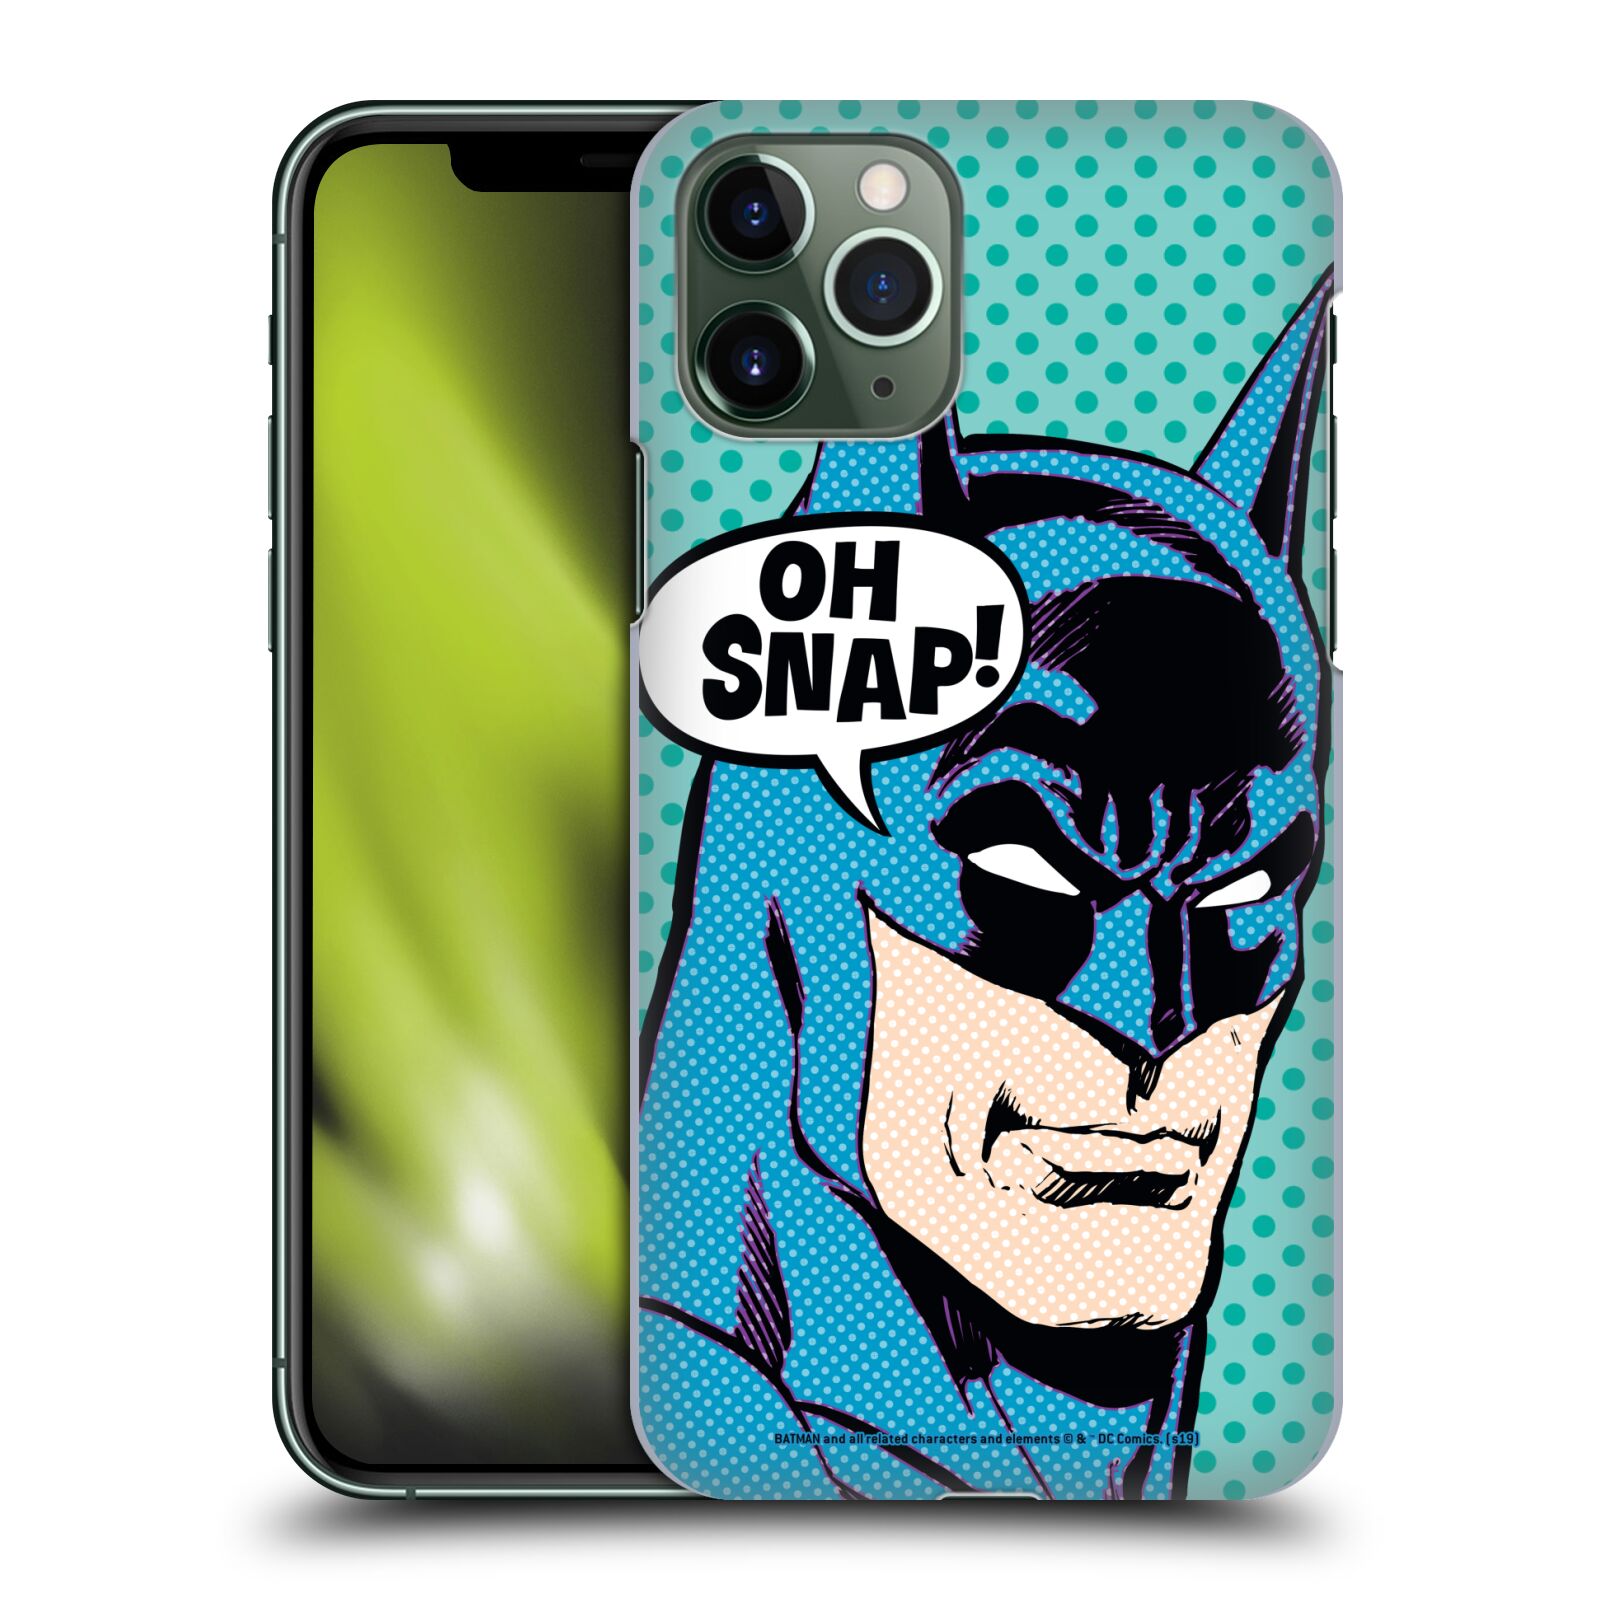 Pouzdro na mobil Apple Iphone 11 PRO - HEAD CASE - DC komix Batman Pop Art tvář